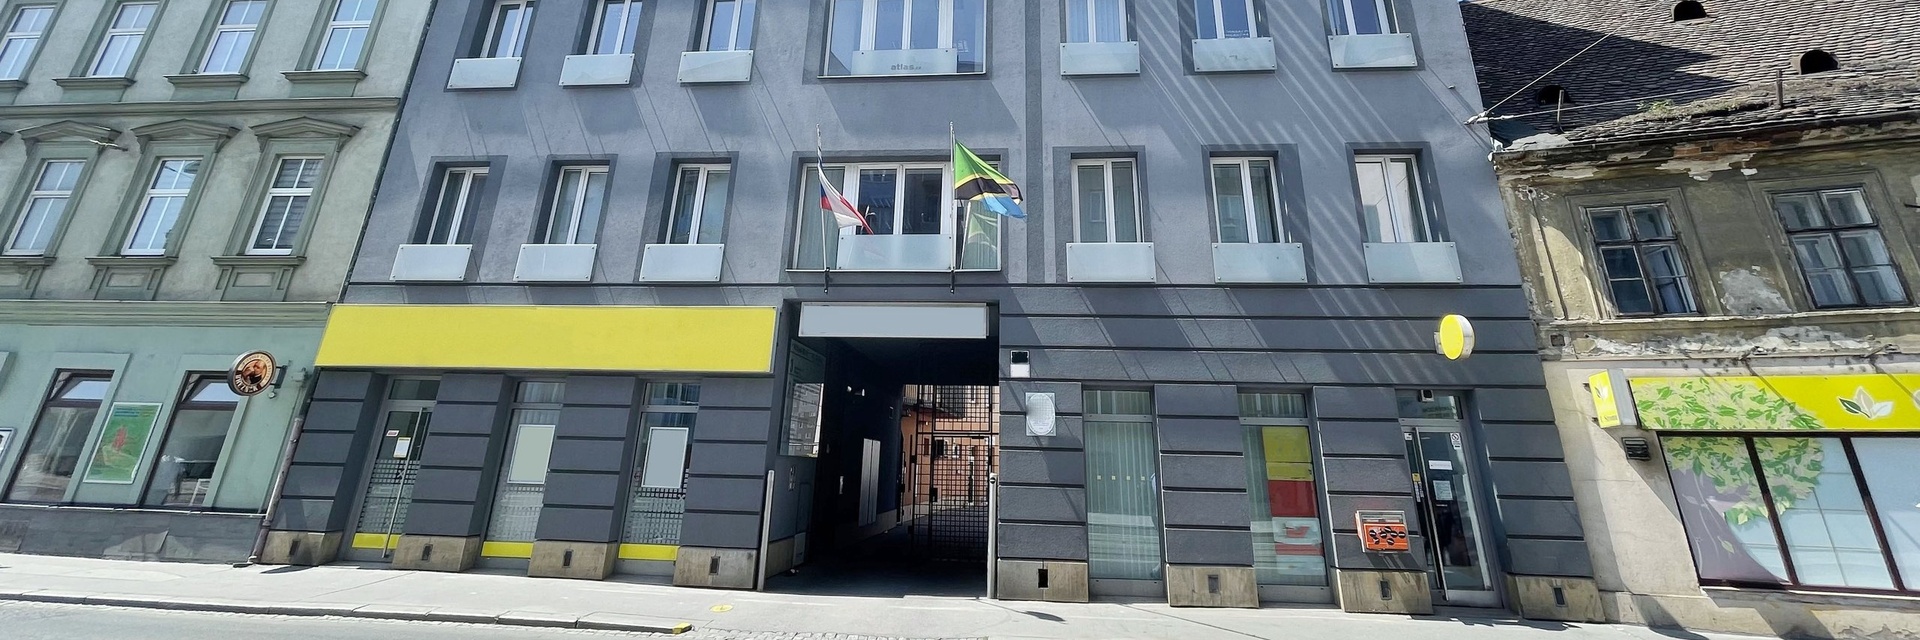 Pronájem kancelářského uzavřeného patra 138 m² ve 4.NP, ulice Křížová, Brno